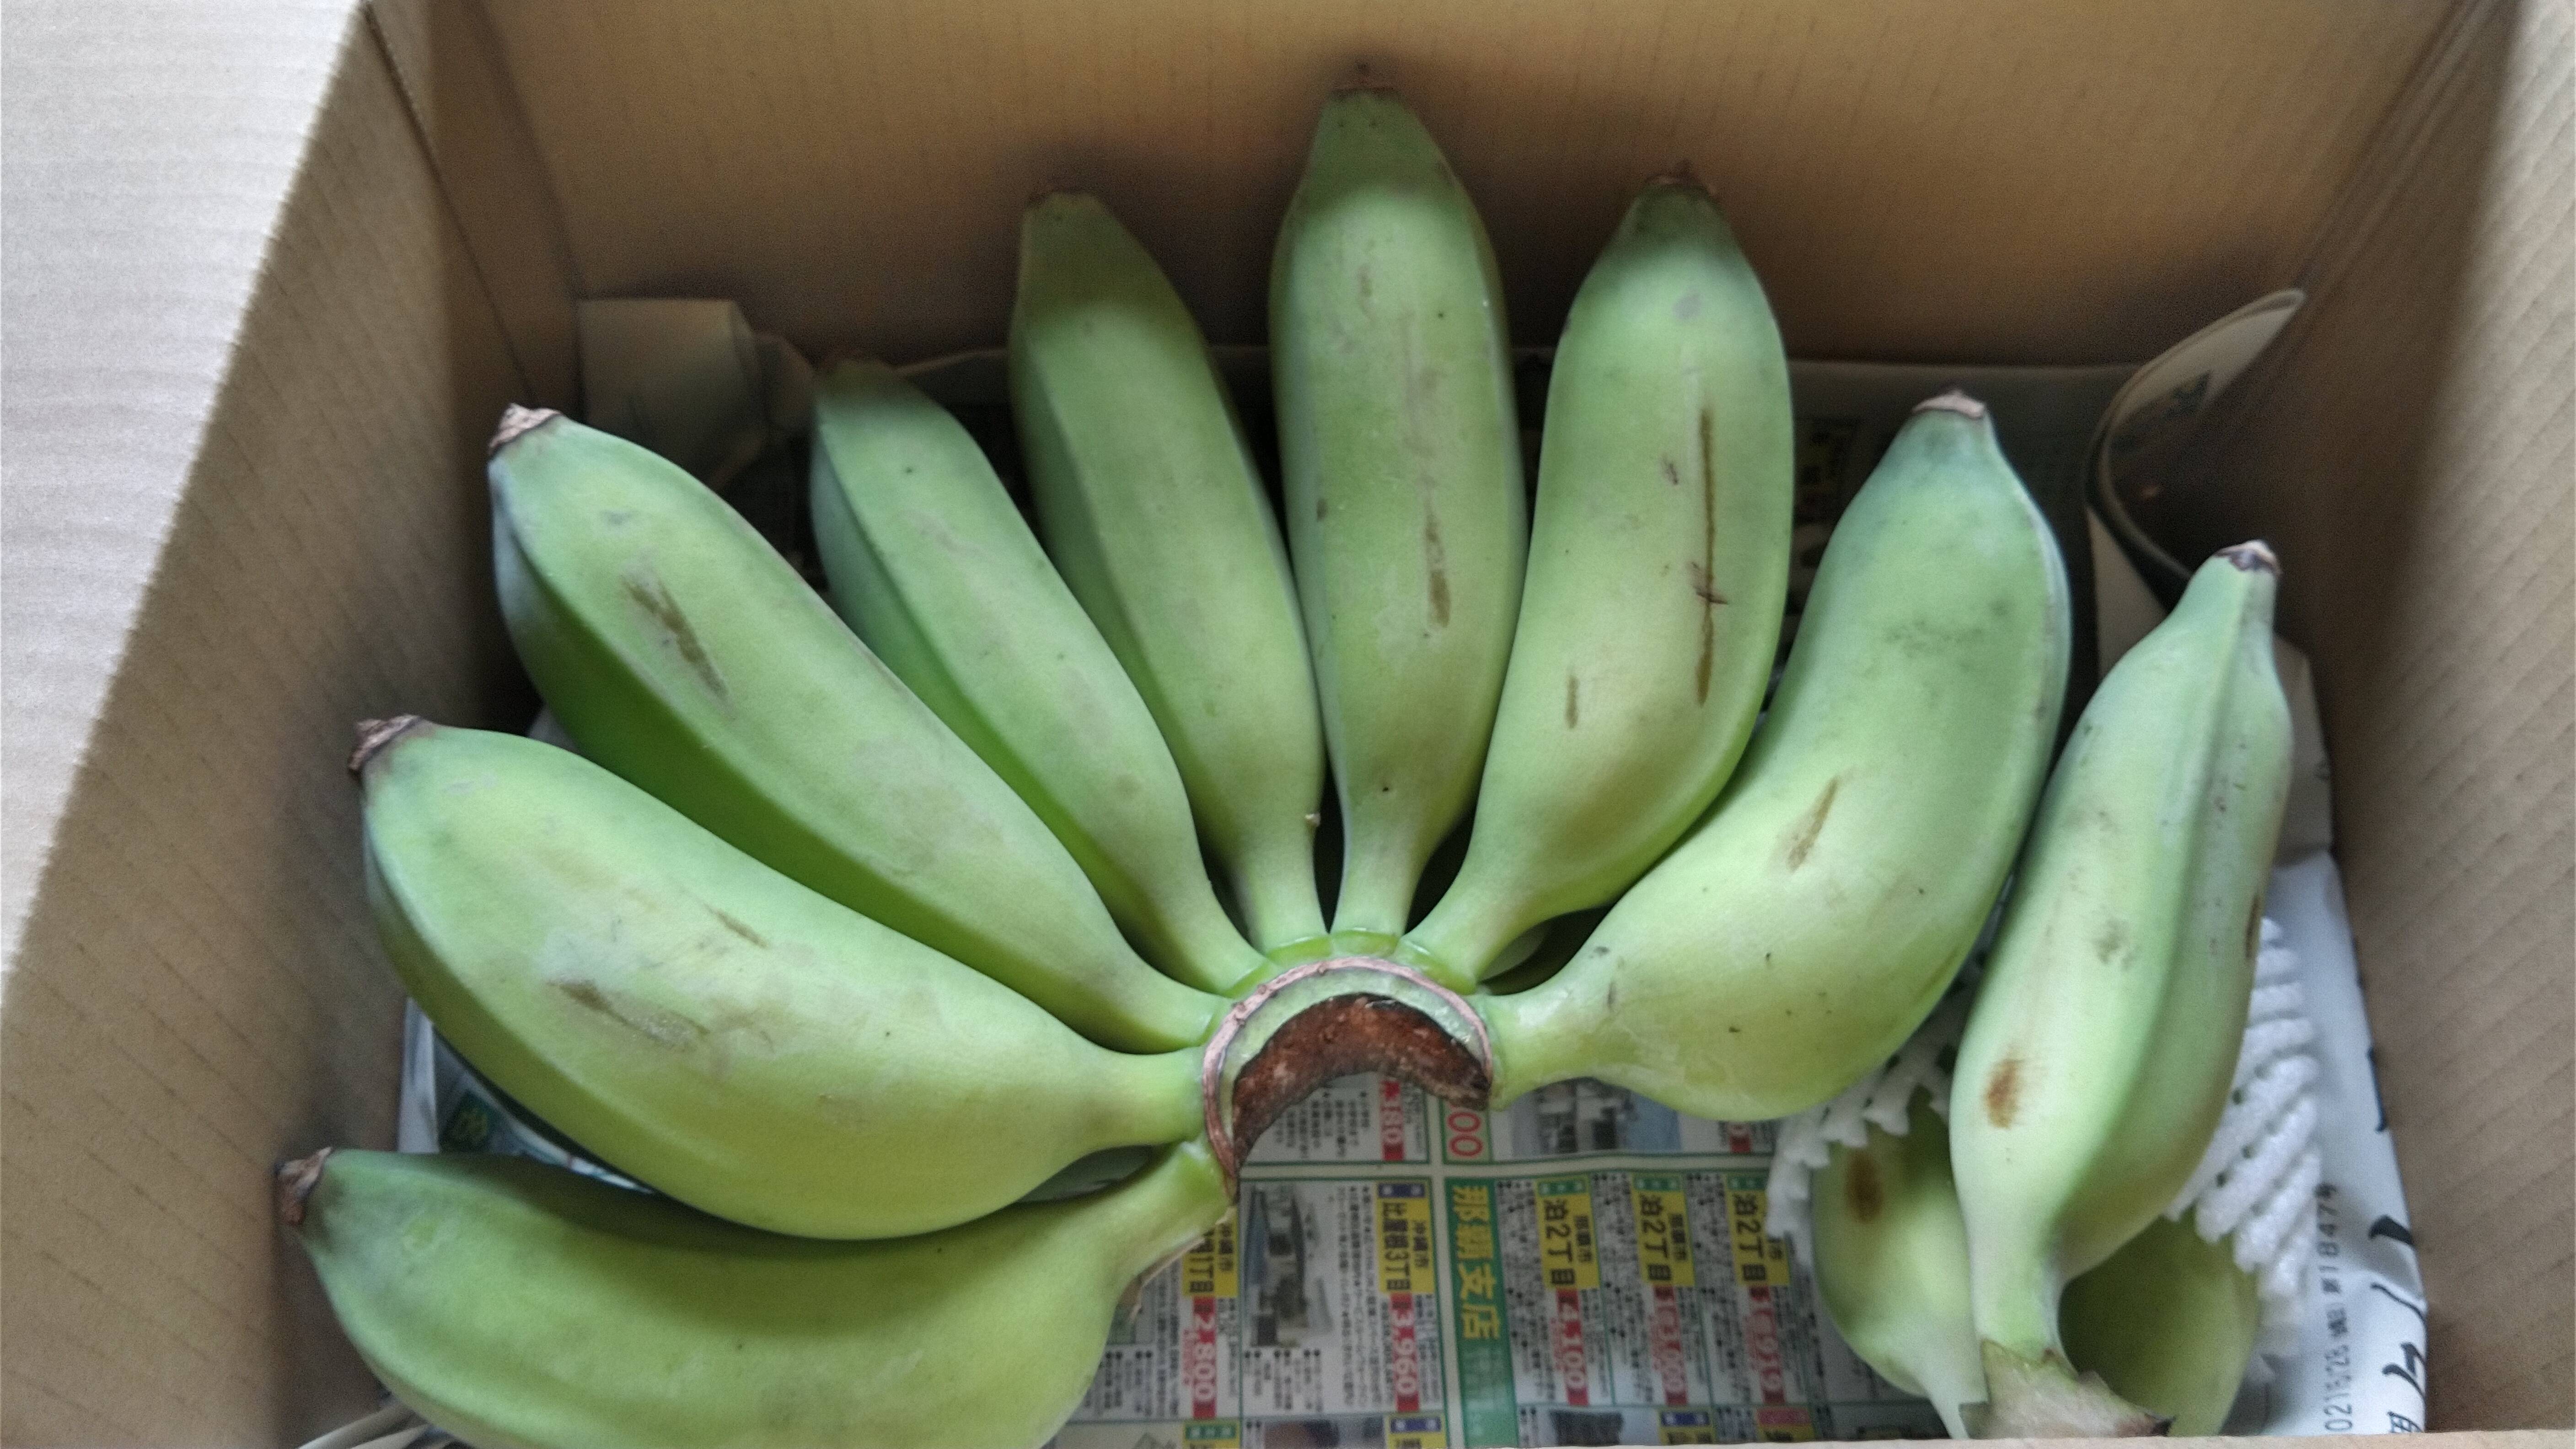 食品 贈り物 沖縄県産28アップルバナナ房なしバラ訳あり 0rTOrXAhS7